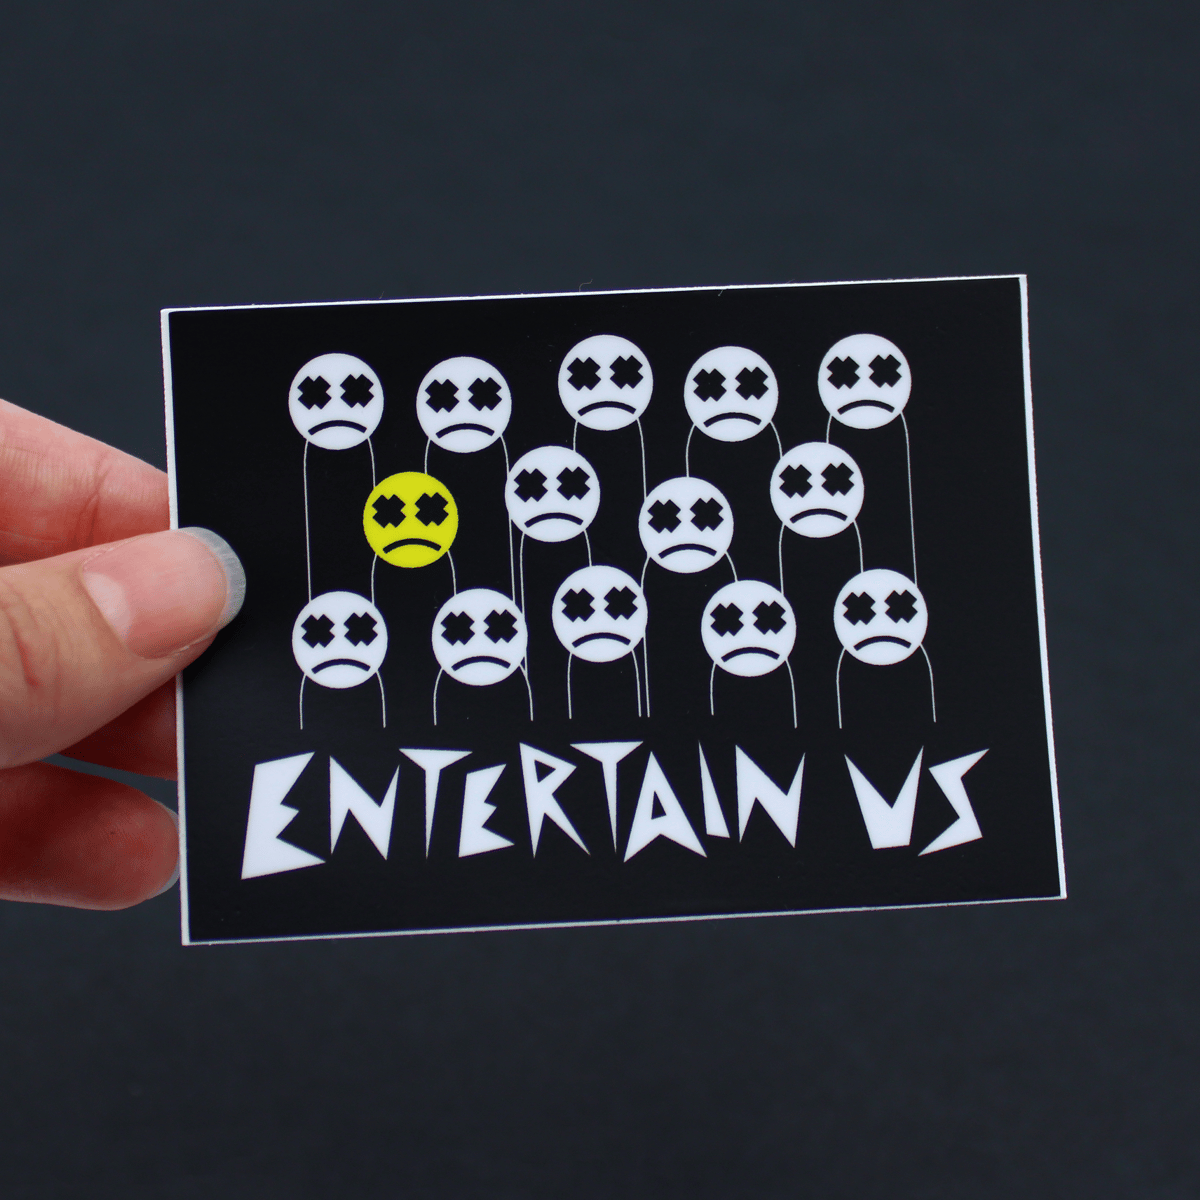 Entertain Us Sticker